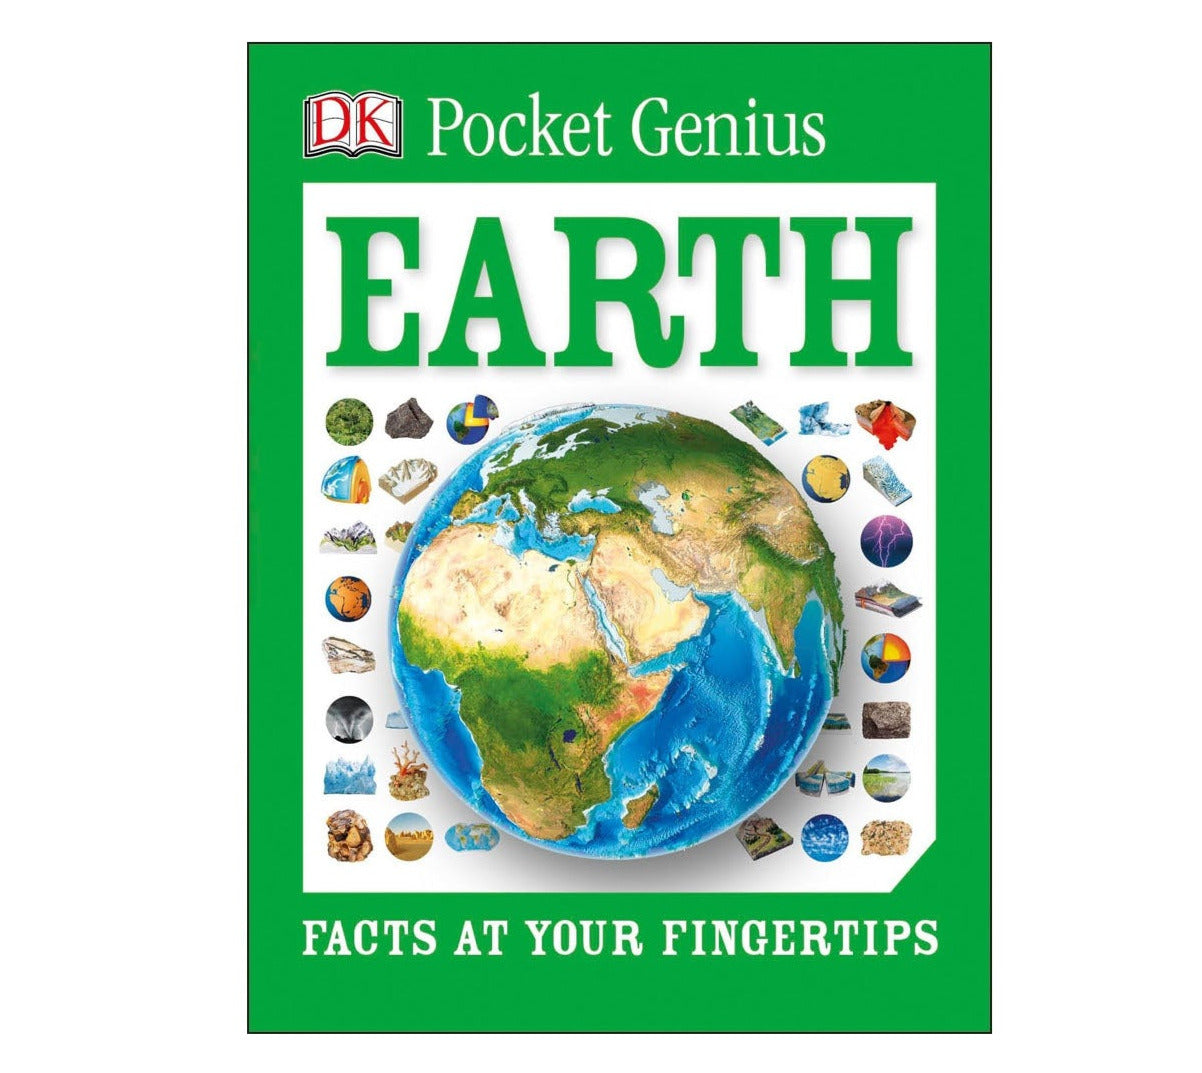 Pocket Genius Earth